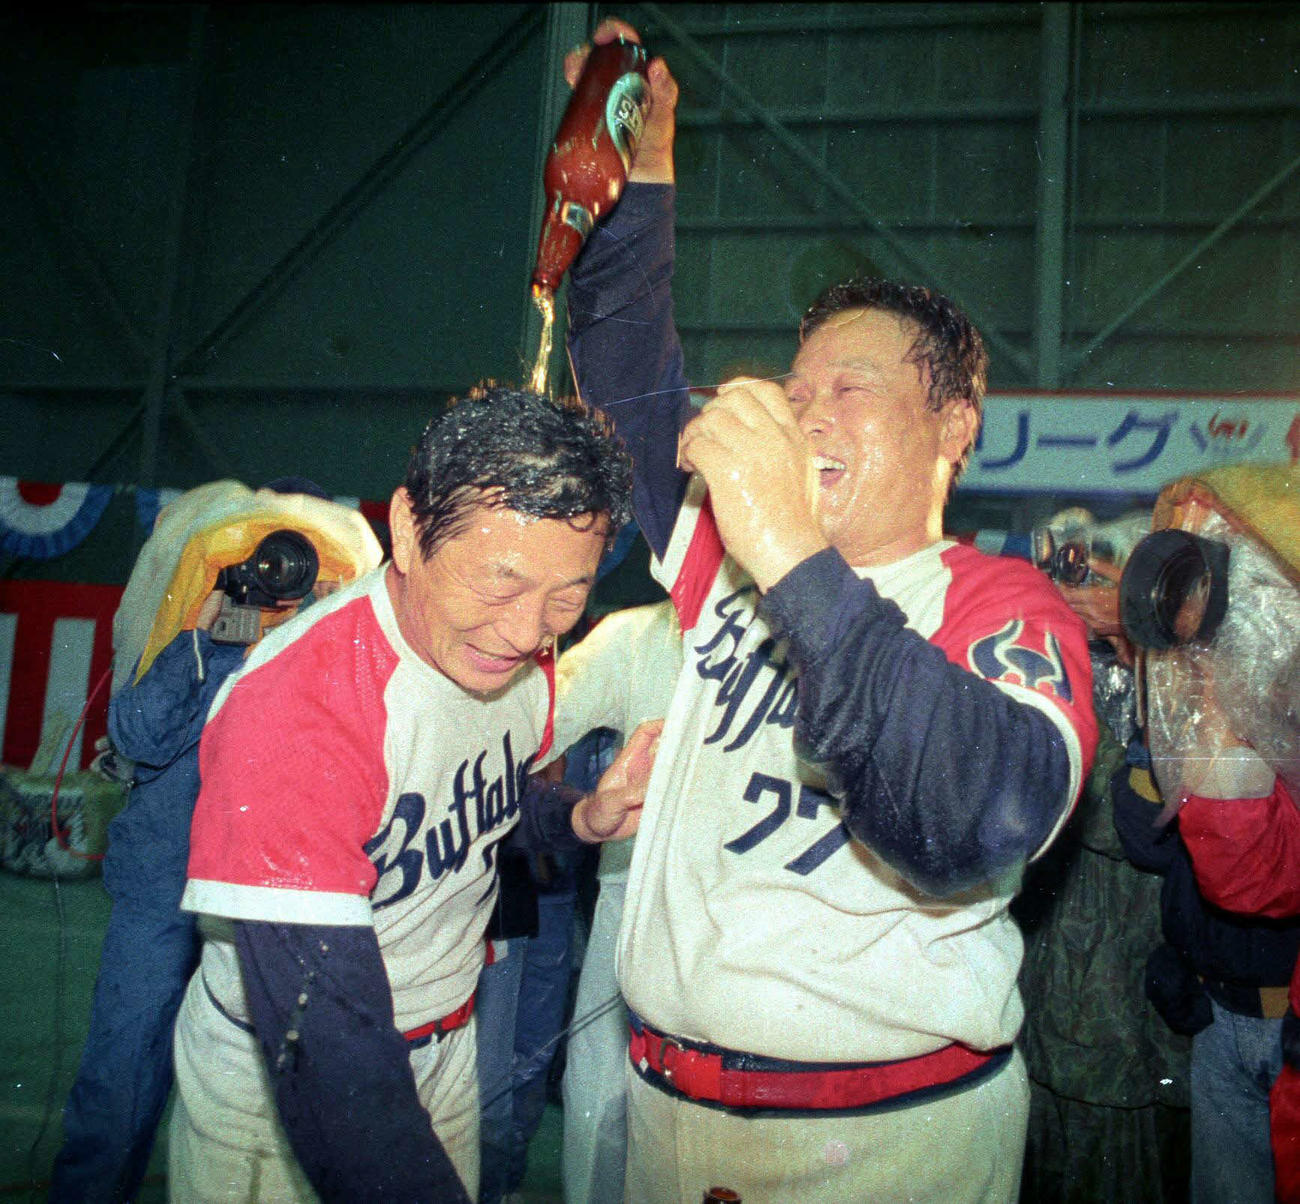 1989年10月14日、パ・リーグ優勝祝賀会でビールかけをする近鉄仰木監督（左）と中西コーチ